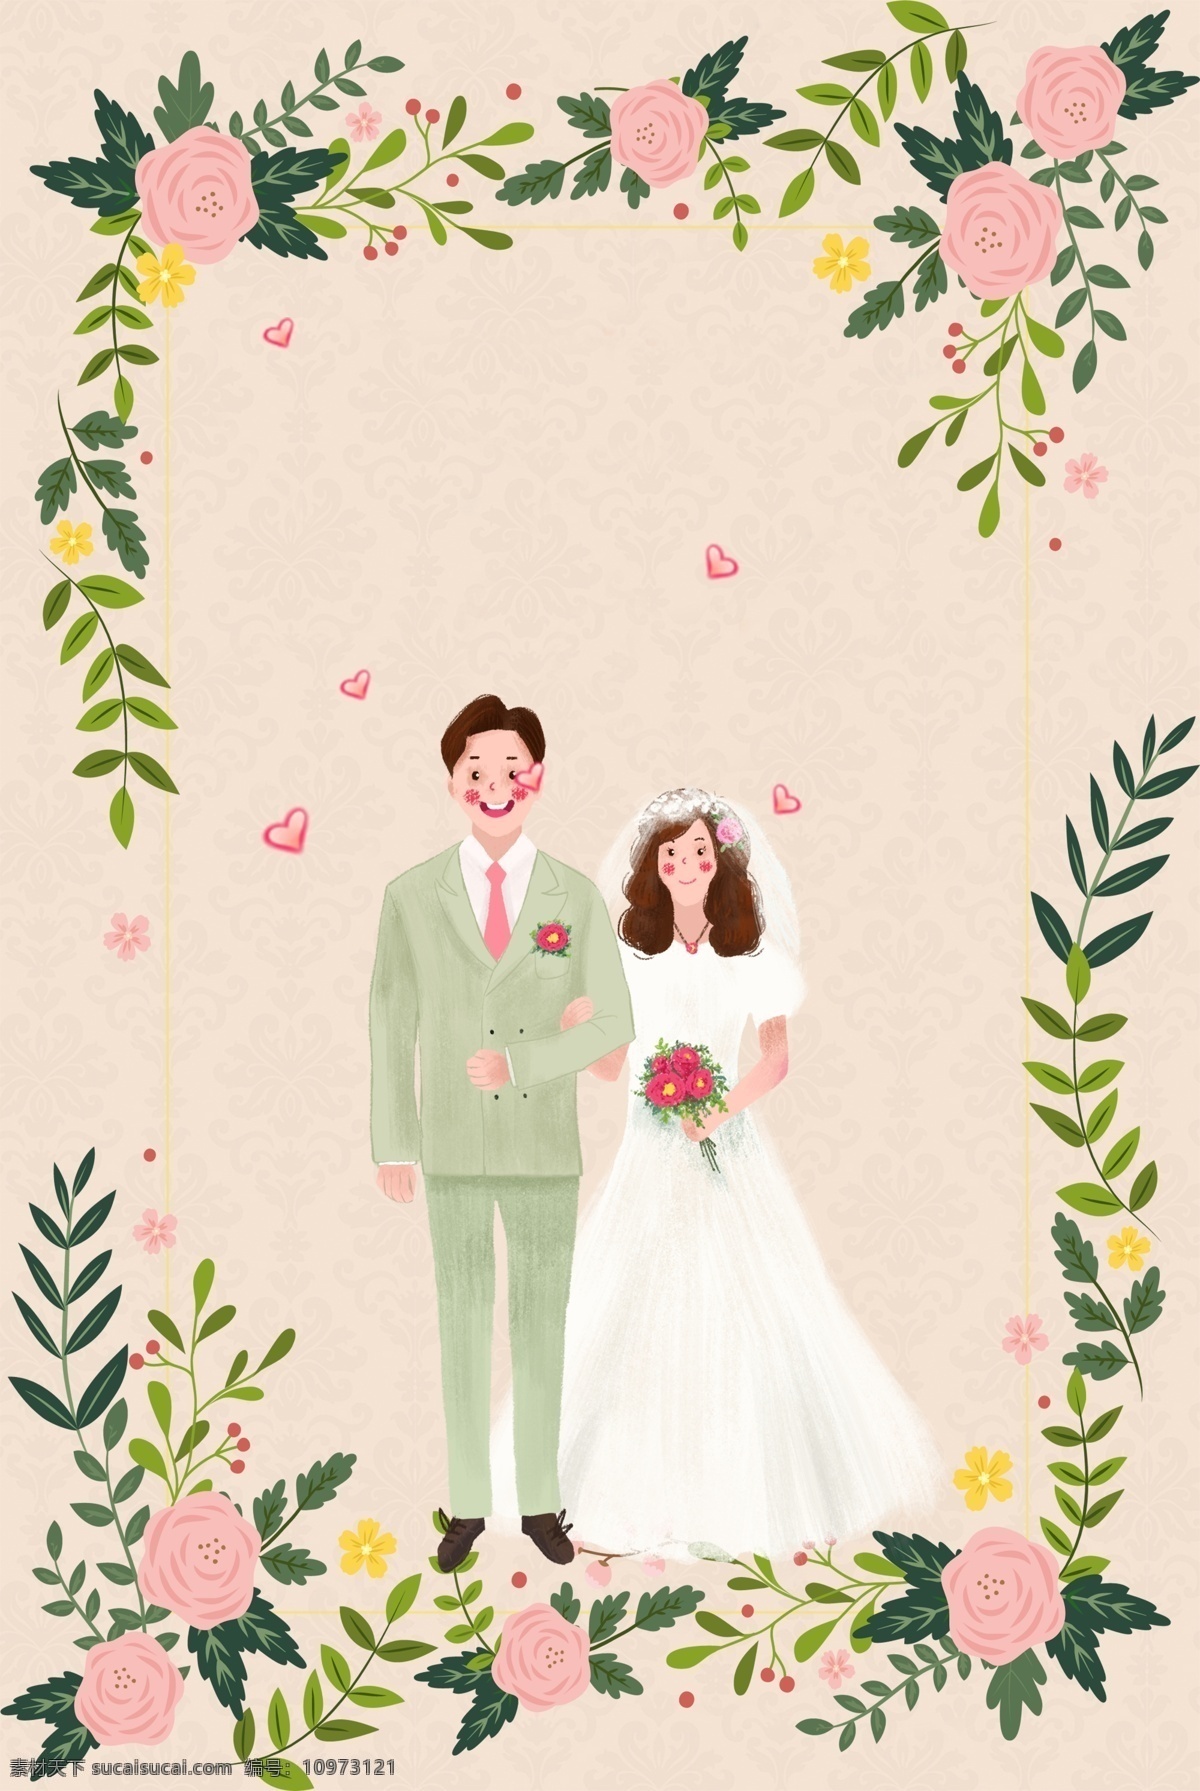 彩色 创意 结婚 婚姻 背景 纹理 花朵 植物 自然 邀请函